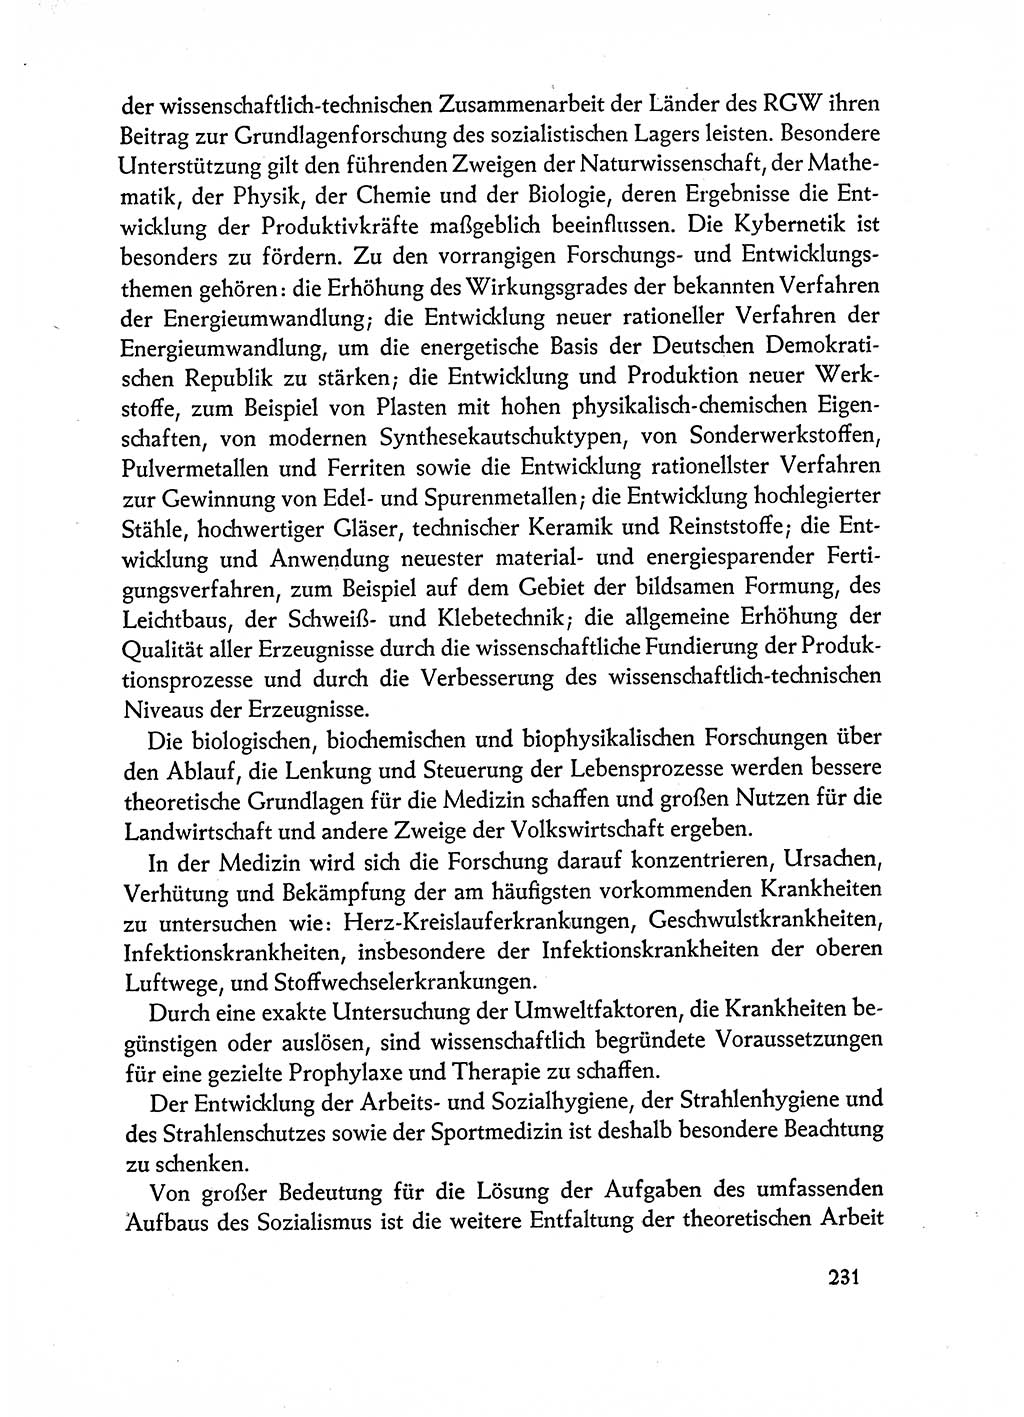 Dokumente der Sozialistischen Einheitspartei Deutschlands (SED) [Deutsche Demokratische Republik (DDR)] 1962-1963, Seite 231 (Dok. SED DDR 1962-1963, S. 231)